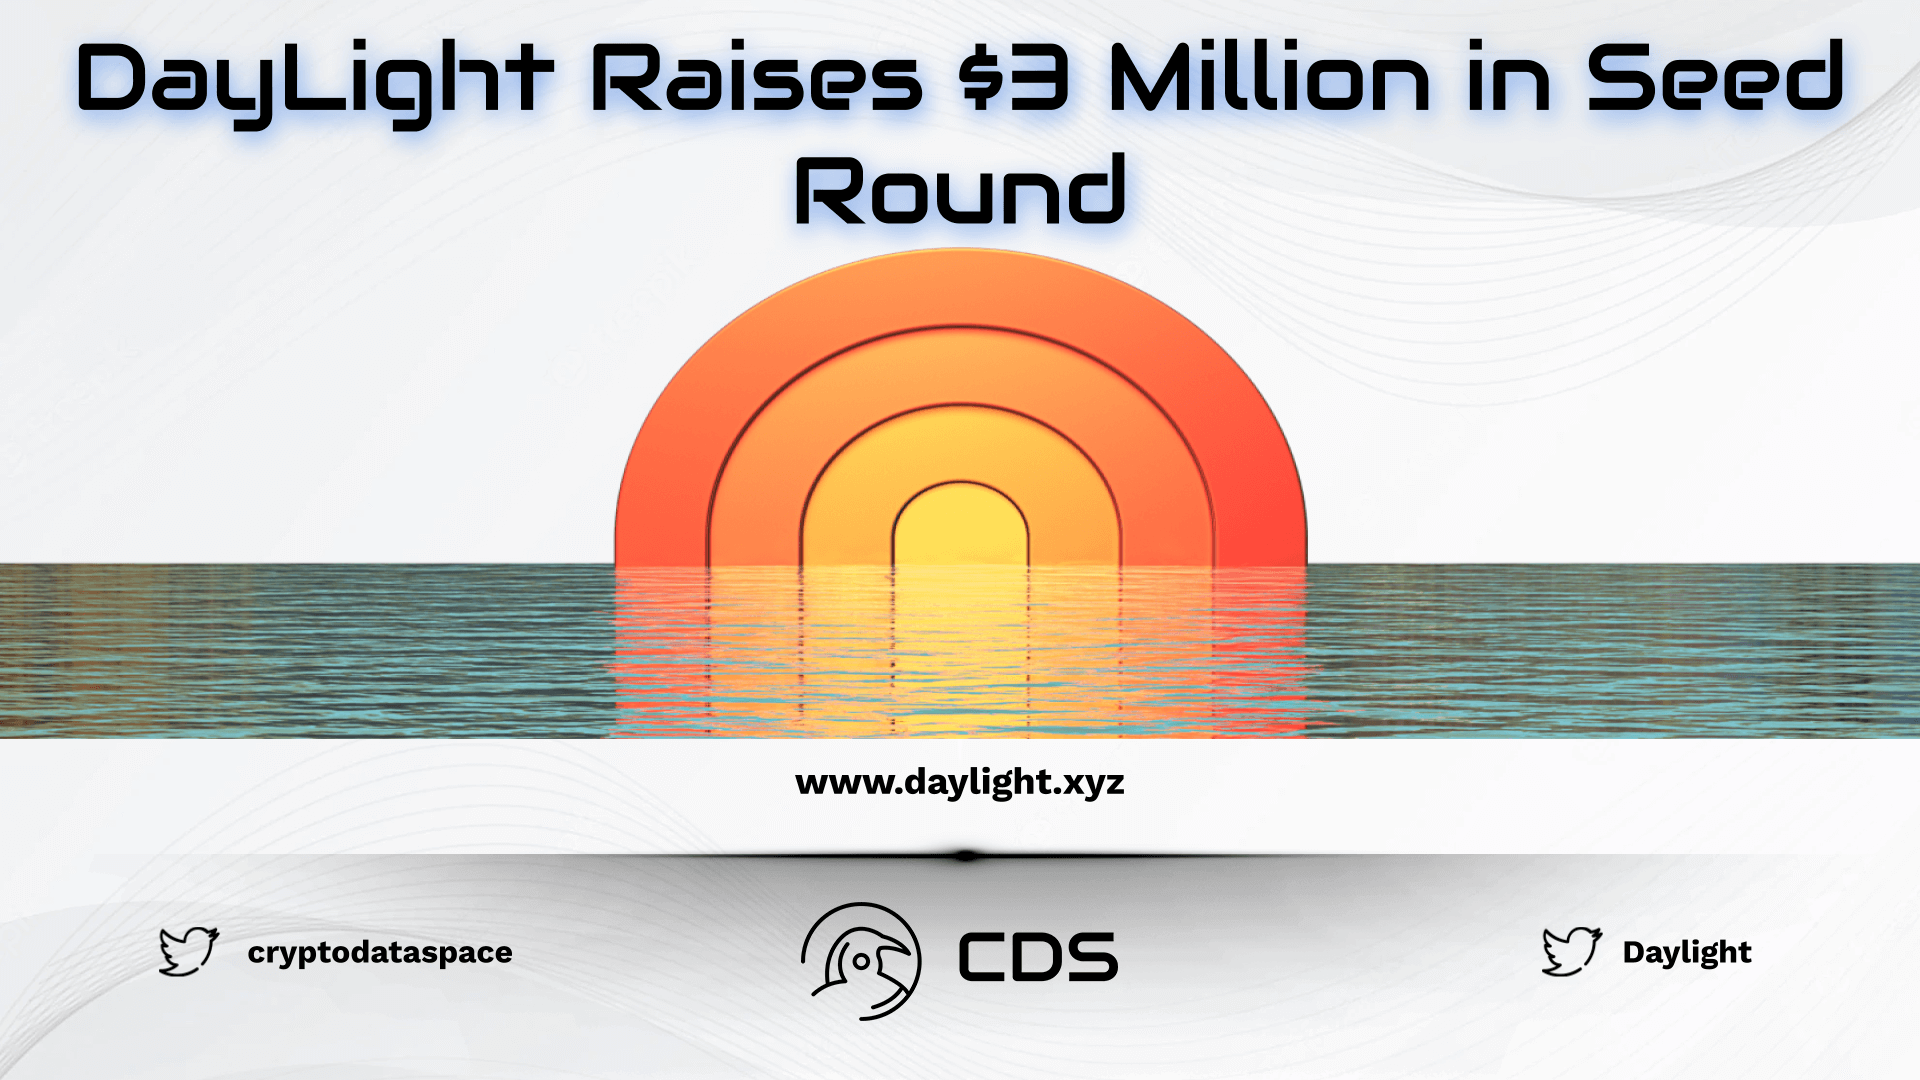 daylight raises $3 million